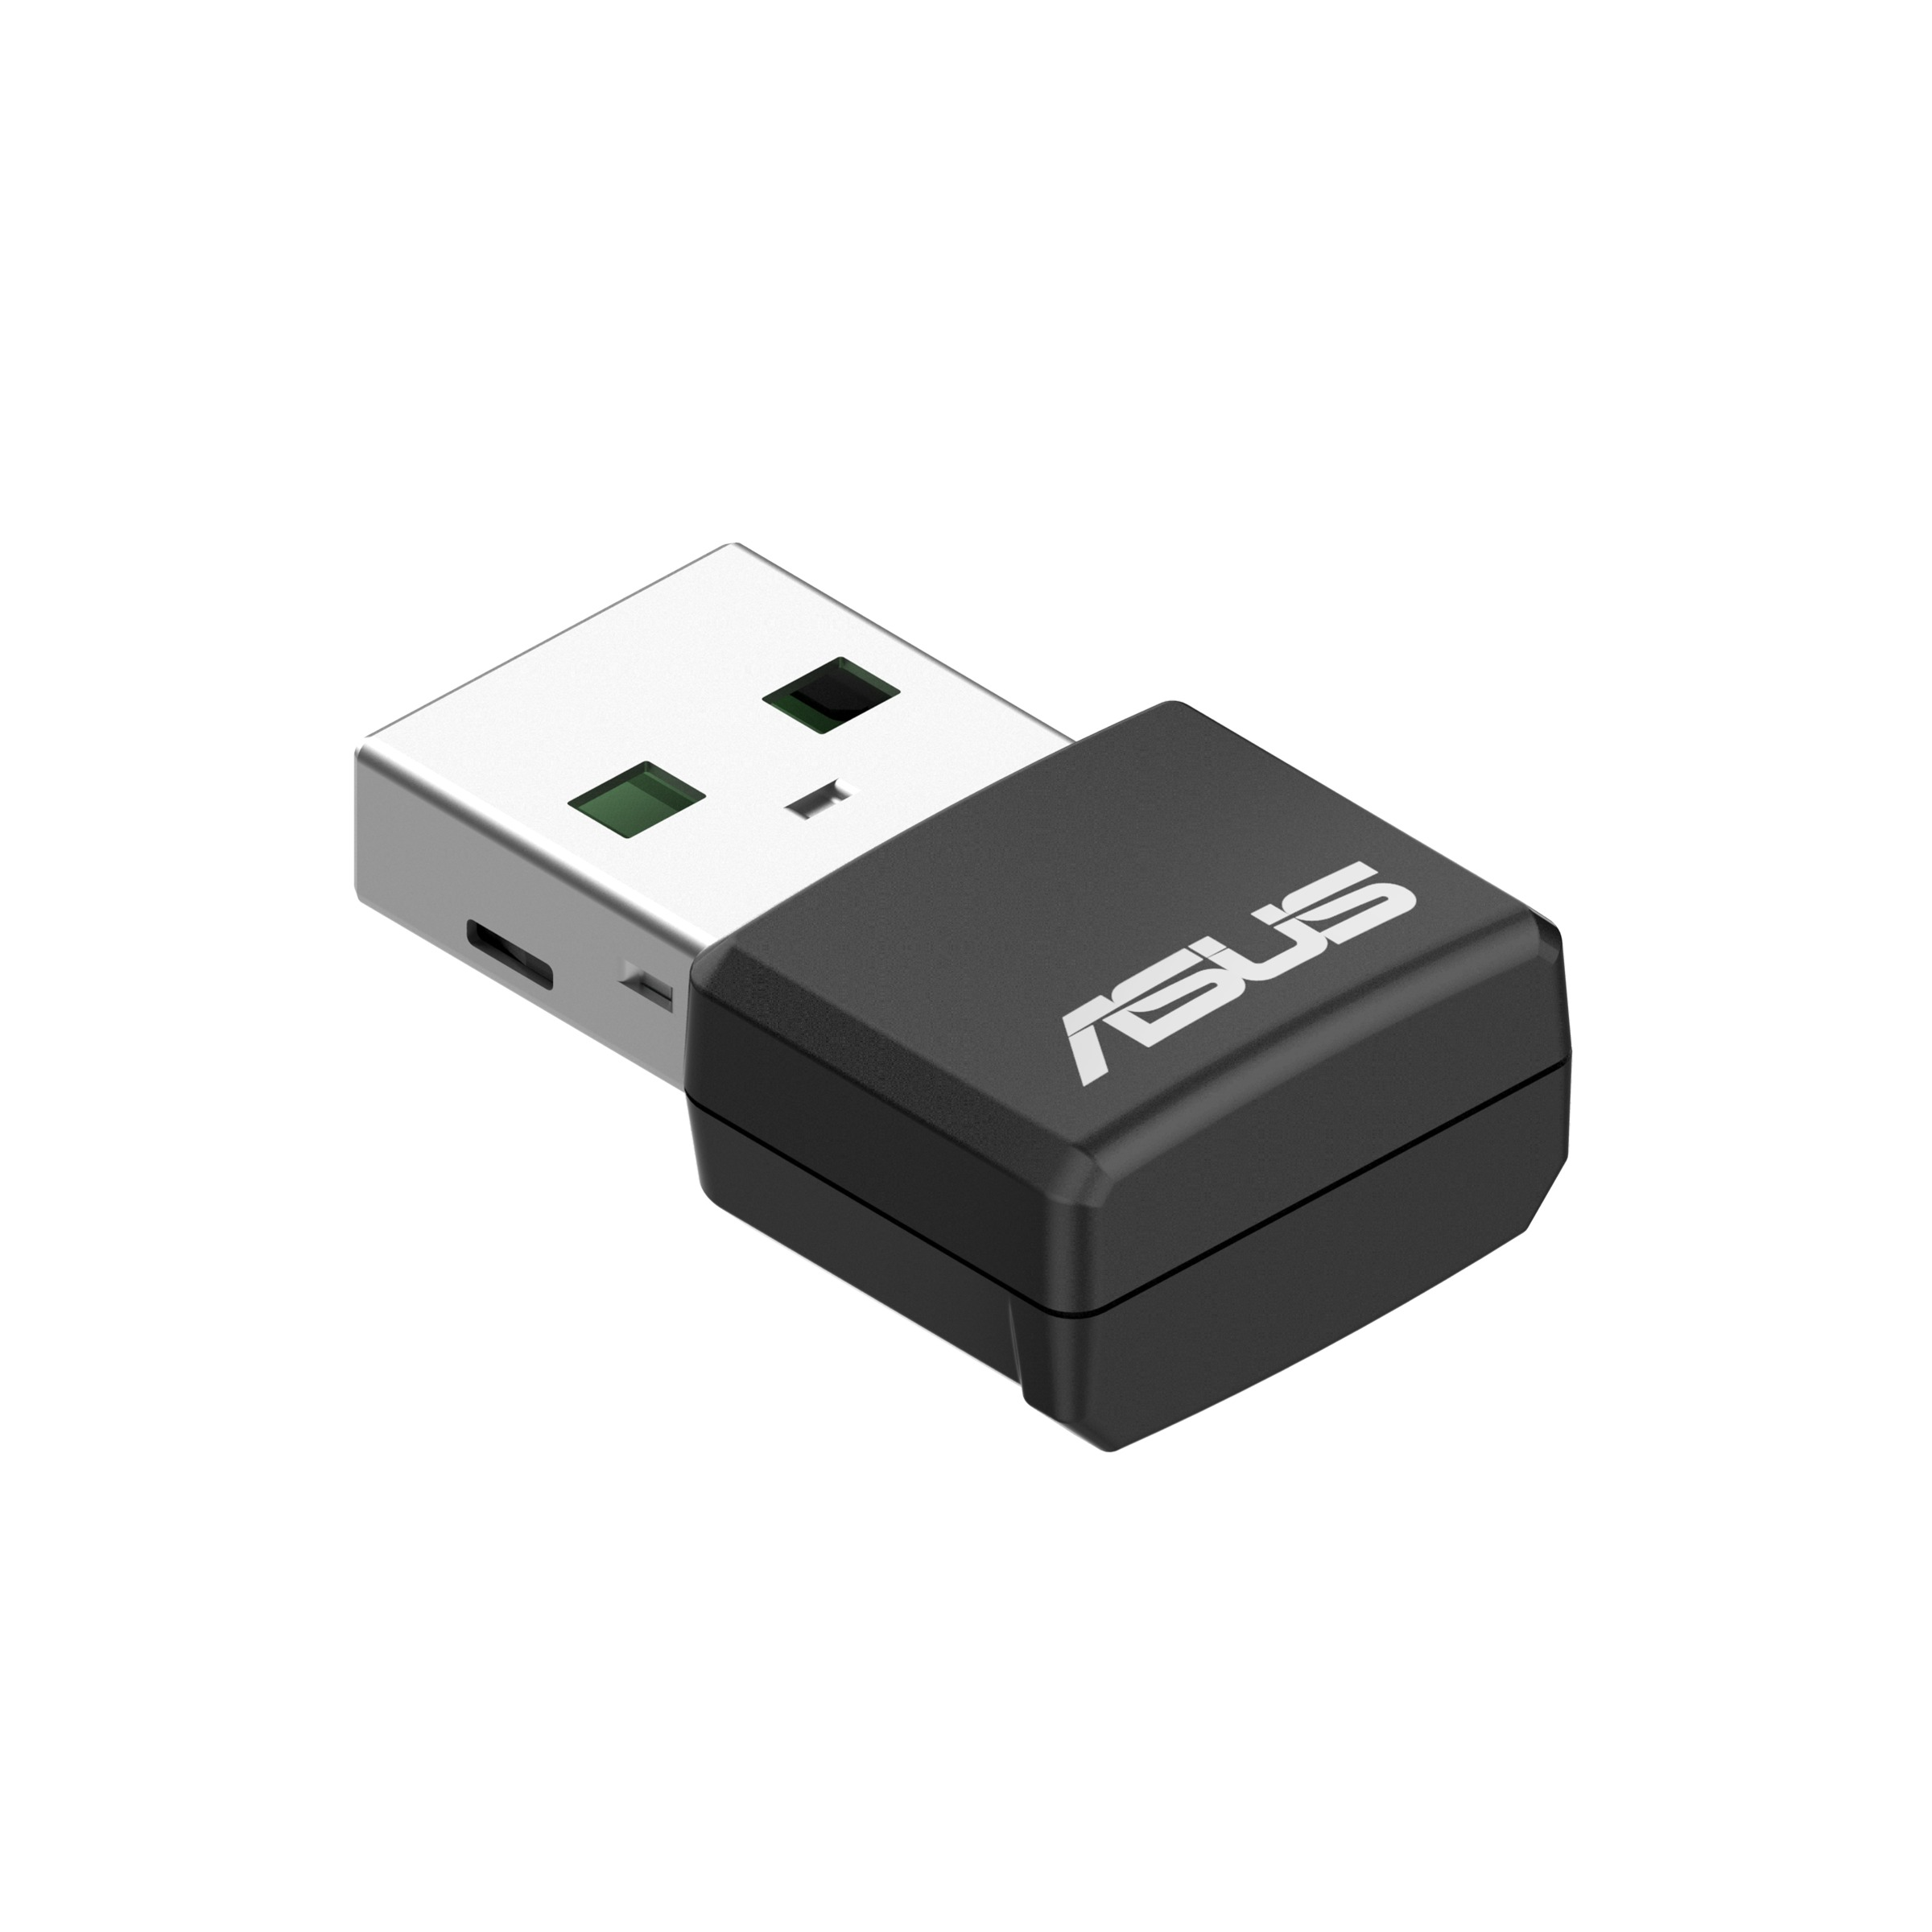 ASUS USB-AX55 Nano Adapter USB 6 AX1800 WiFi